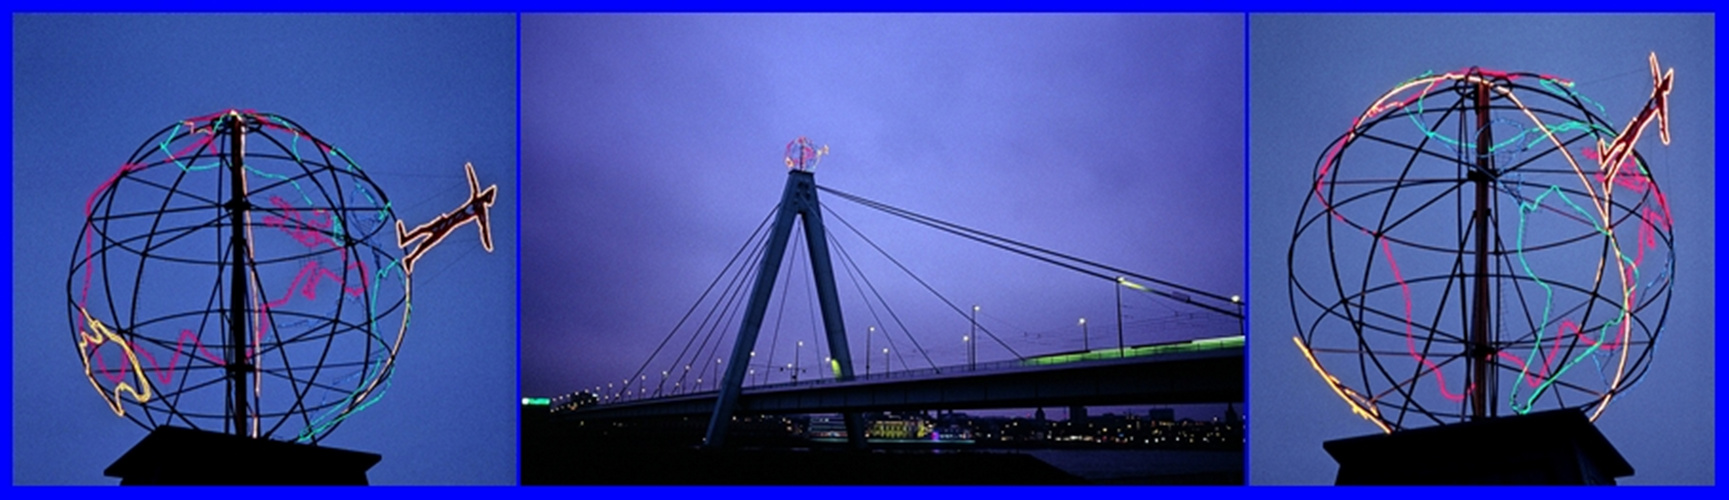 Severinsbrücke mit Weltkugel Collage #2